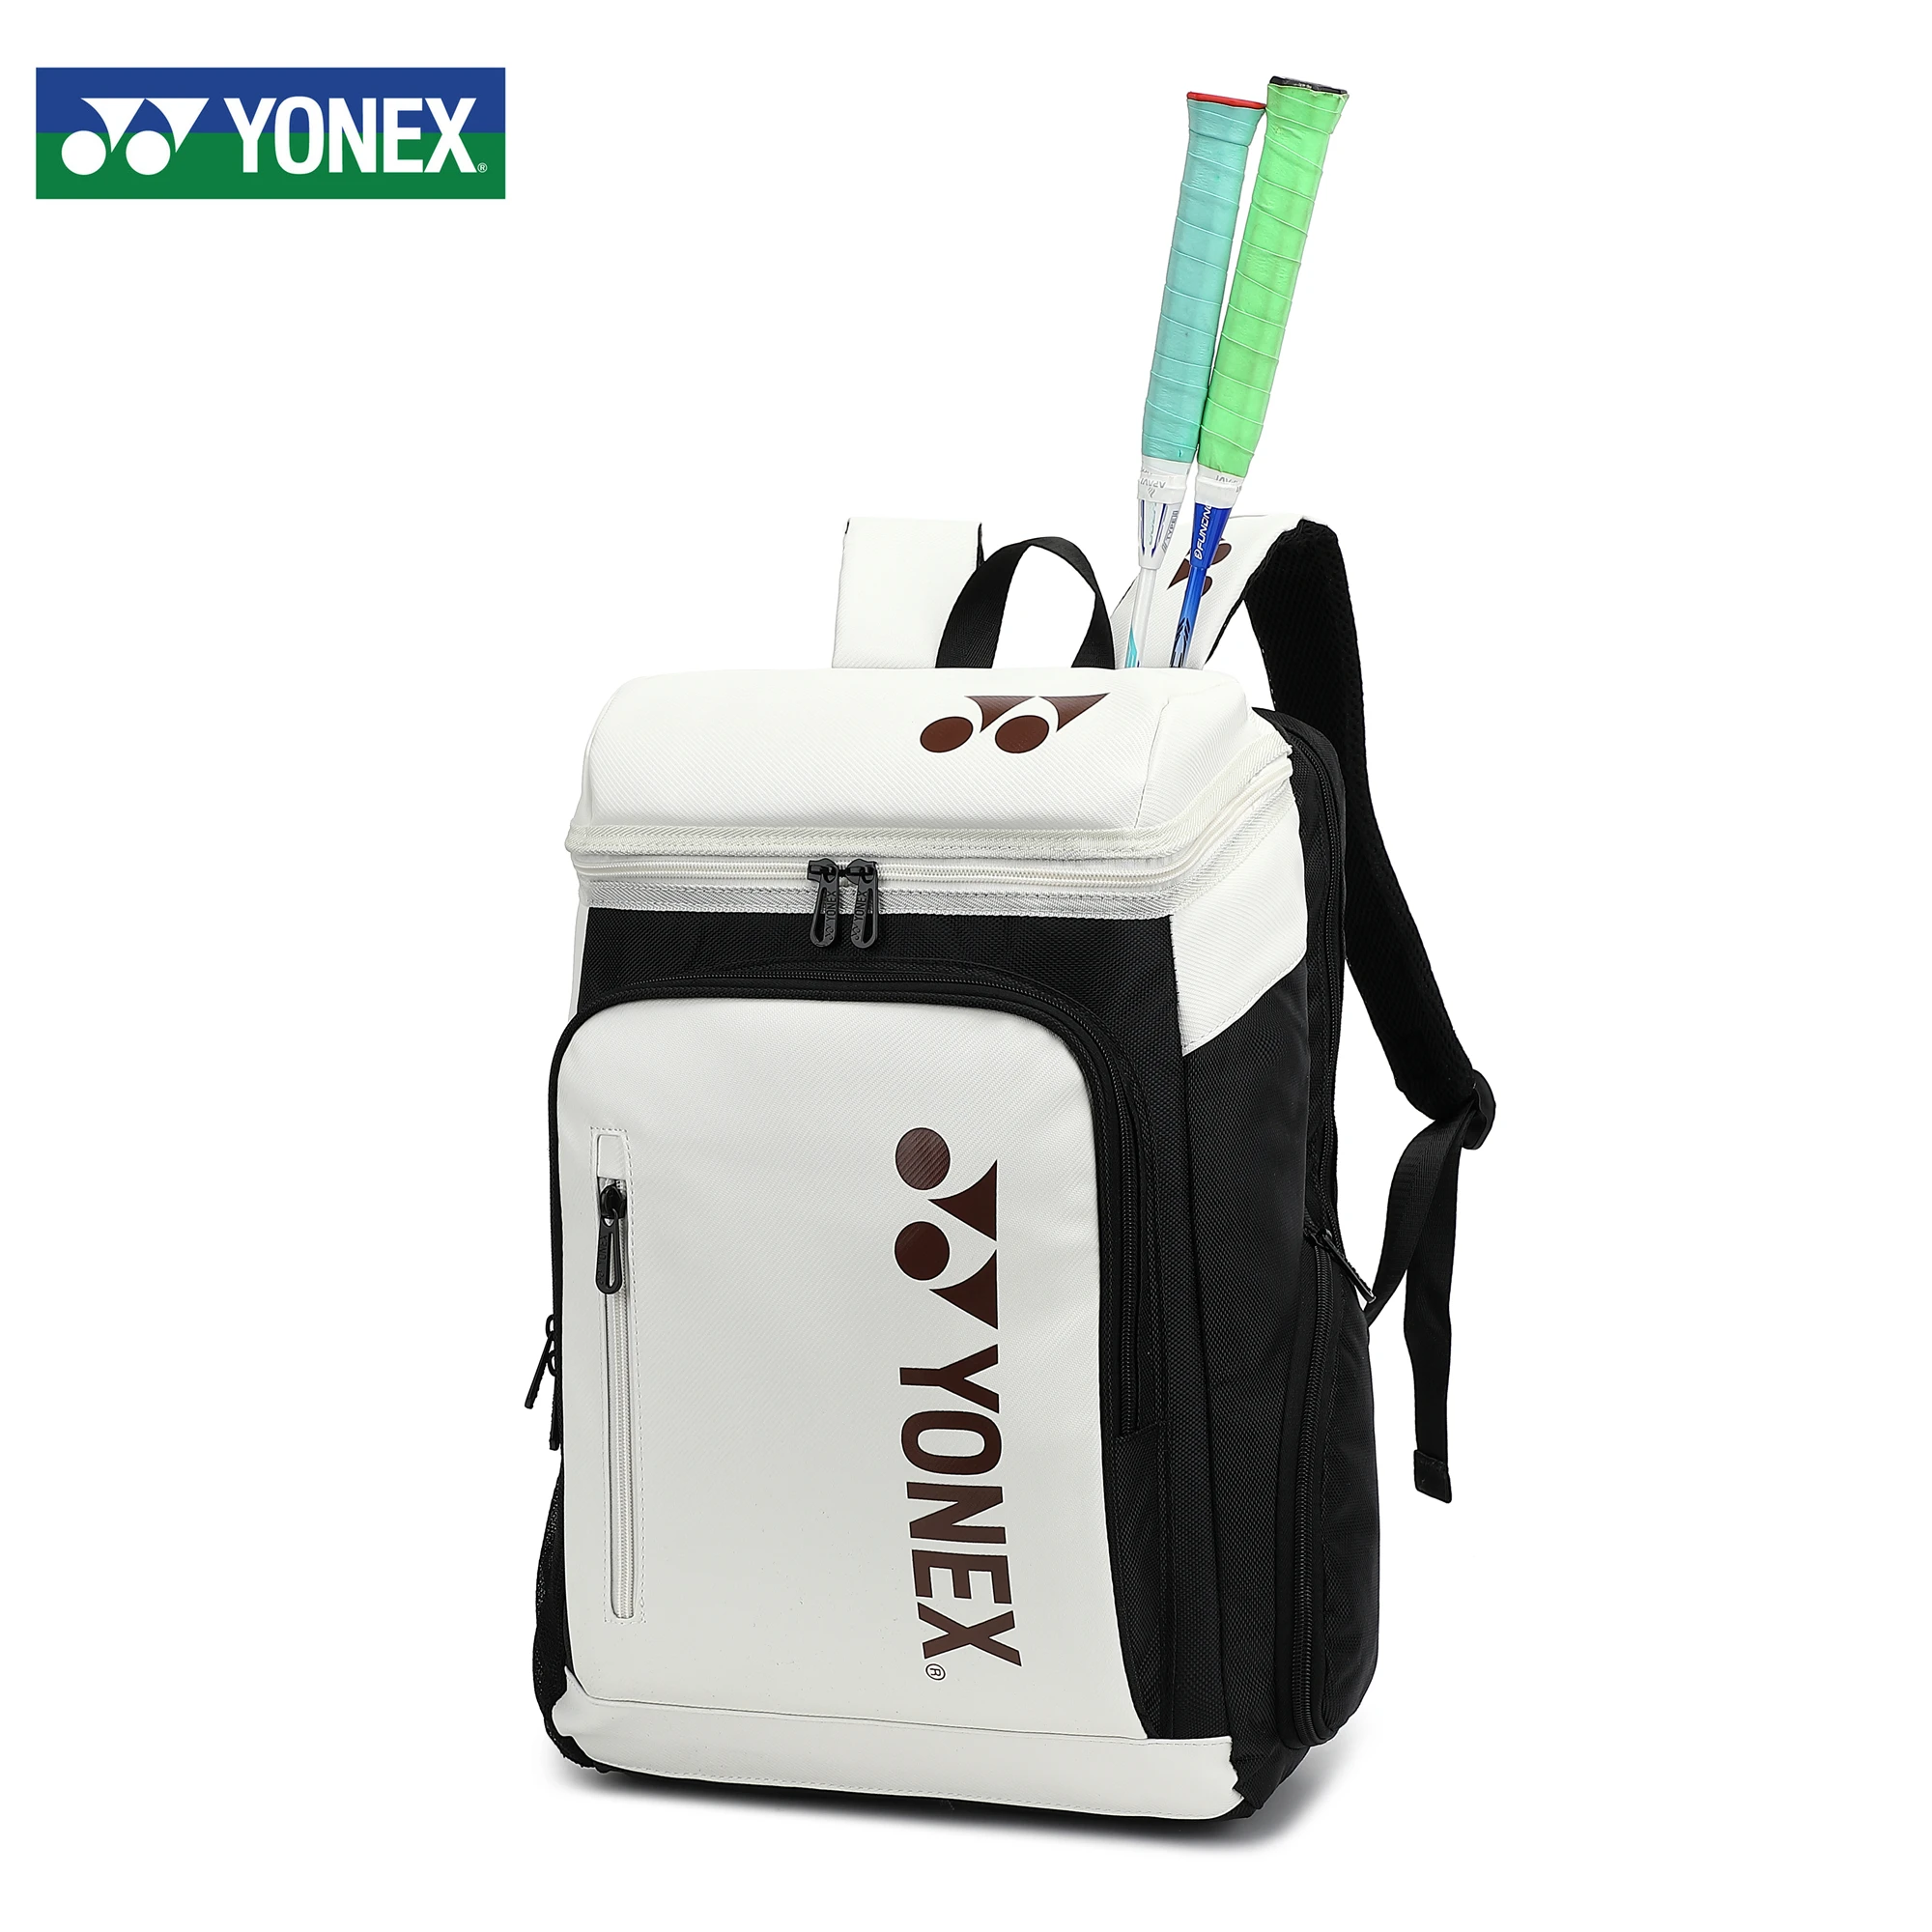 YONEX 전문 배드민턴 테니스 스포츠 가방, 대용량 라켓, 신발 가방, 남녀공용 고품질 라켓 가방, 2-3 개